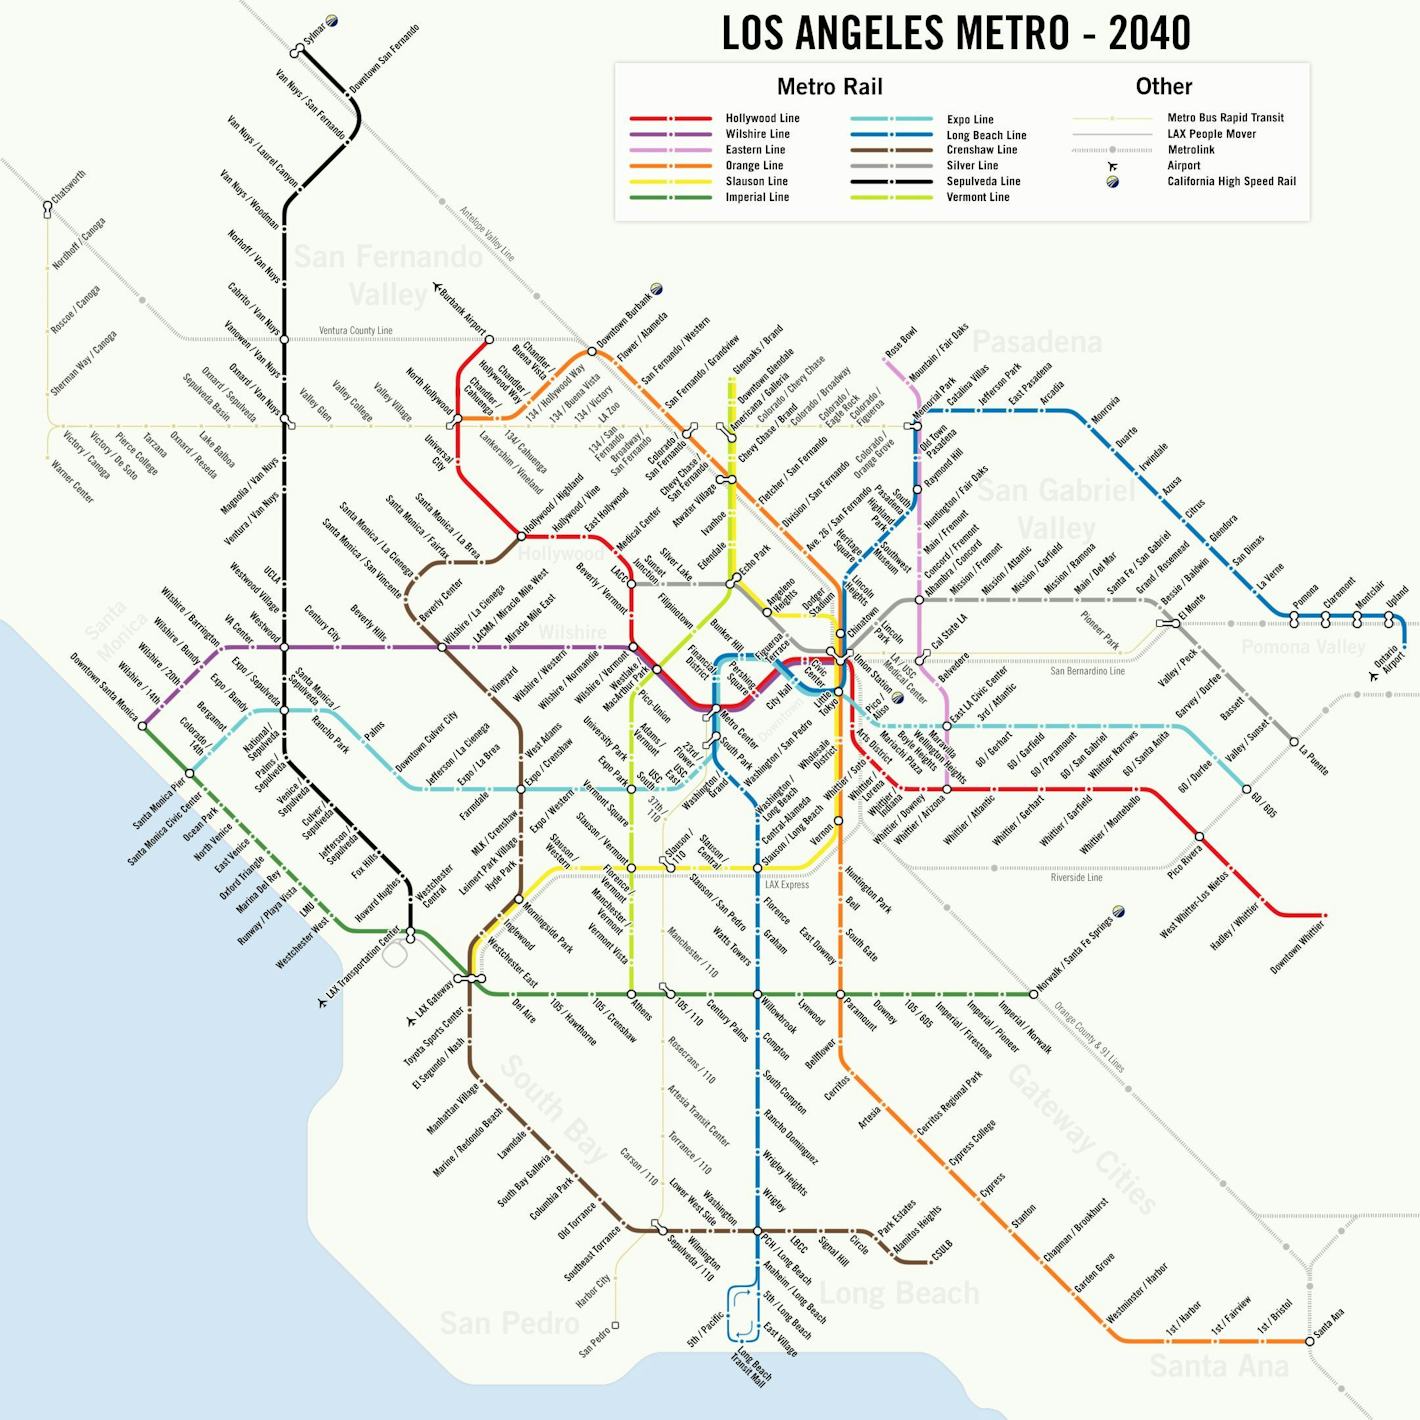 The 2024 Olympics Might Make L.A.'s Futuristic Metro Map Come True